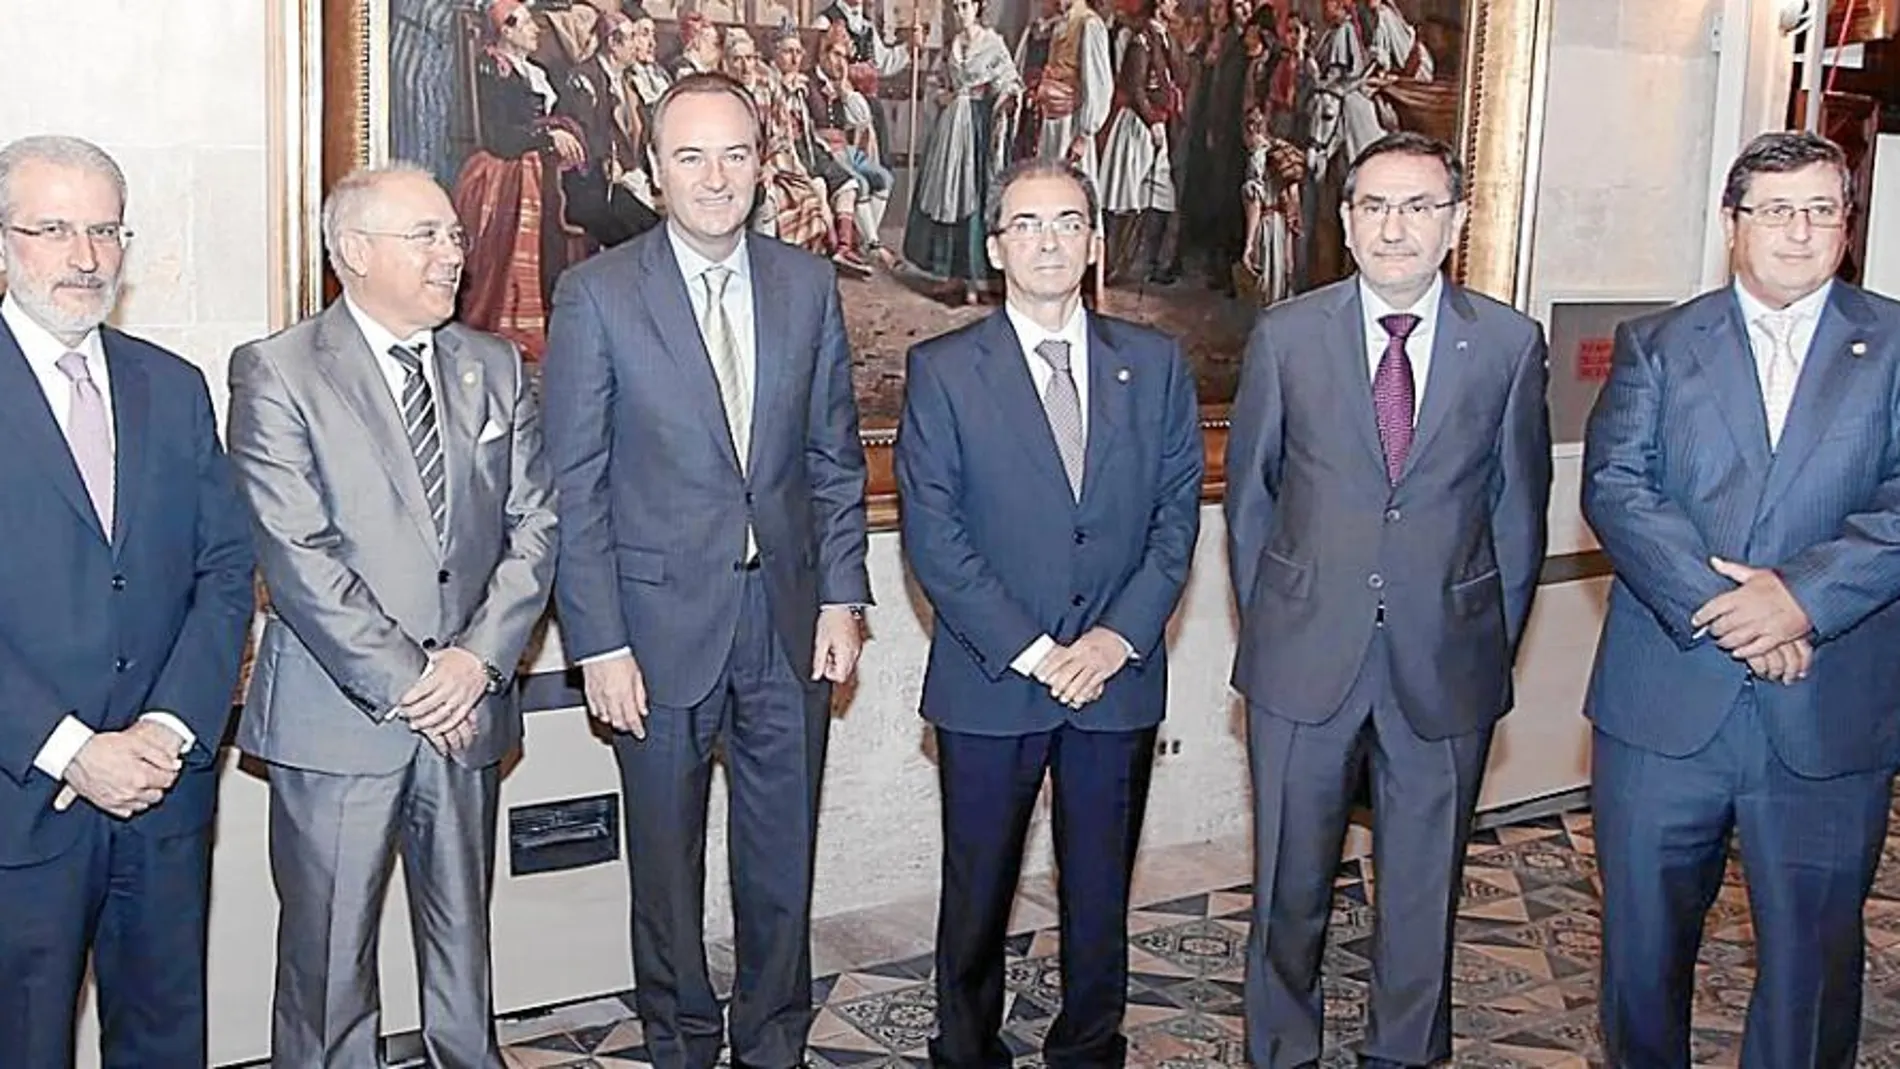 Los cinco rectores de las Universidades públicas valencianas reunidos con el presidente de la Generalitat, Alberto Fabra, el día que recibieron la distinción del Campus de Excelencia en octubre de 2011